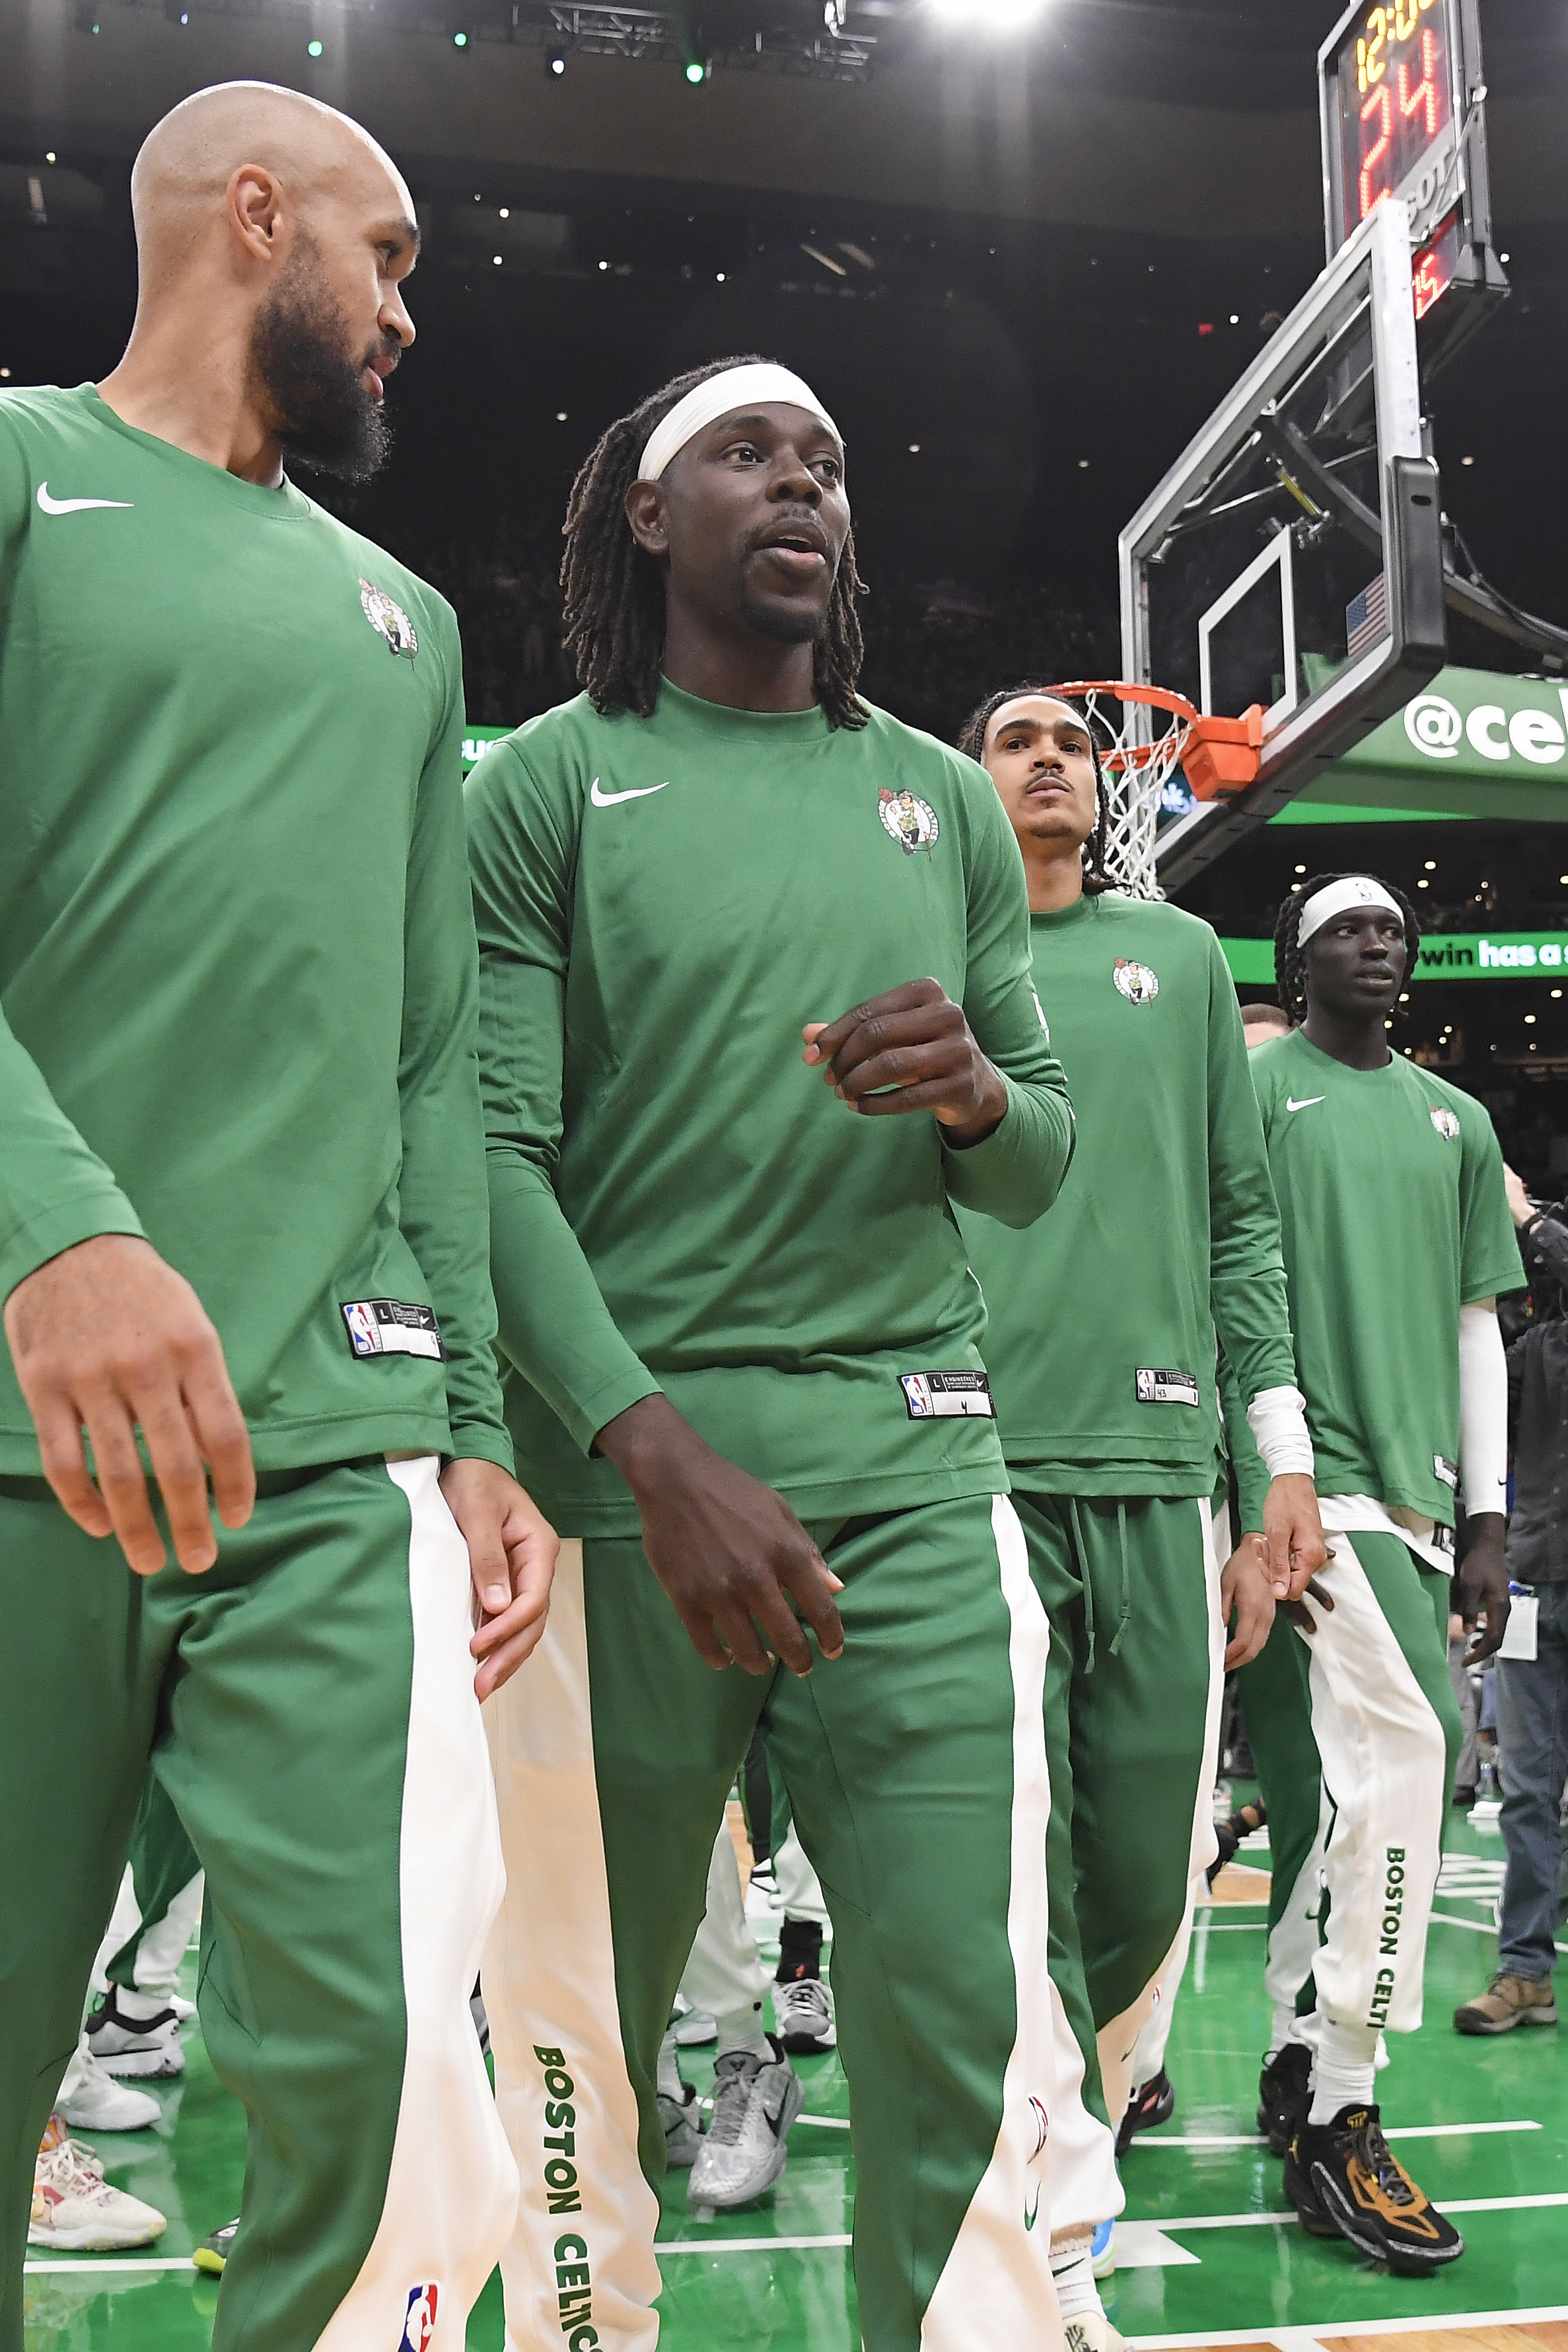 Philadelphia 76ers v Boston Celtics